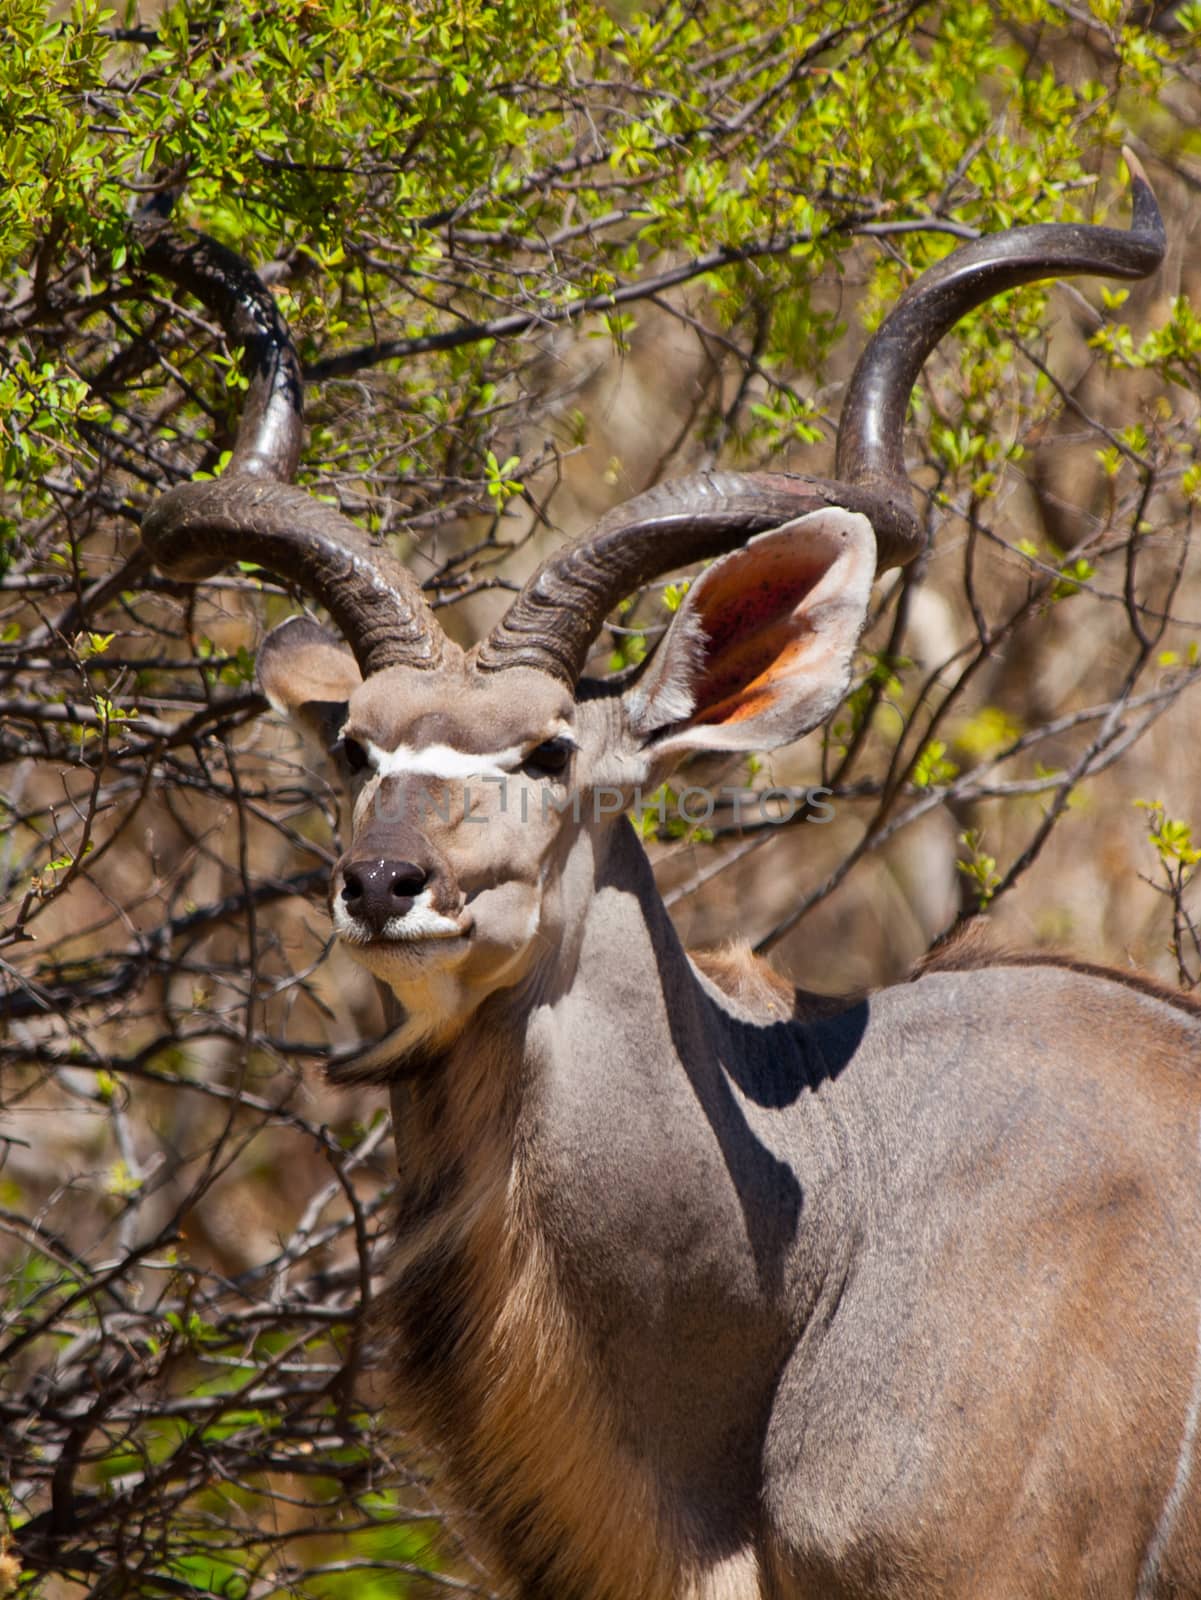 Kudu antelope by pyty